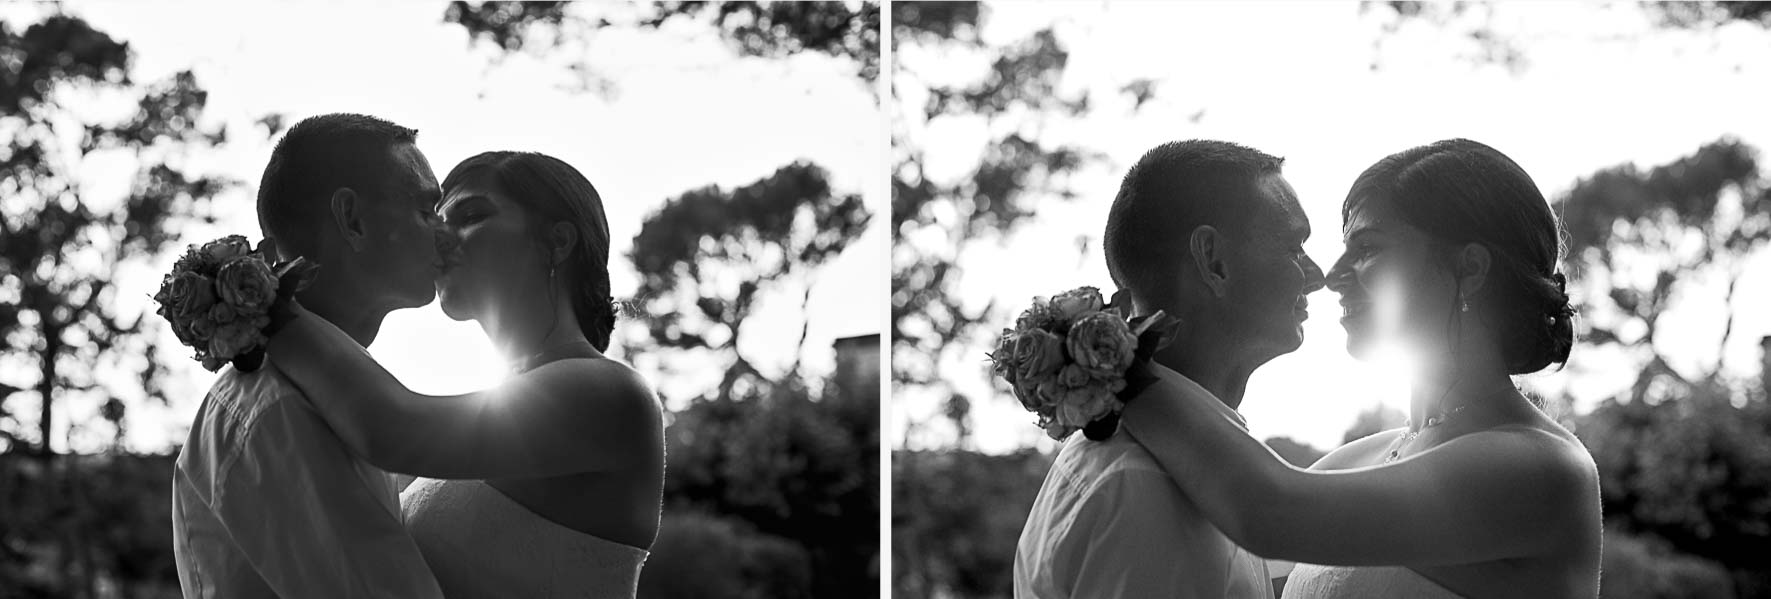 Photographe mariage Aix en Provence - Andrea & Sylvain-33-1